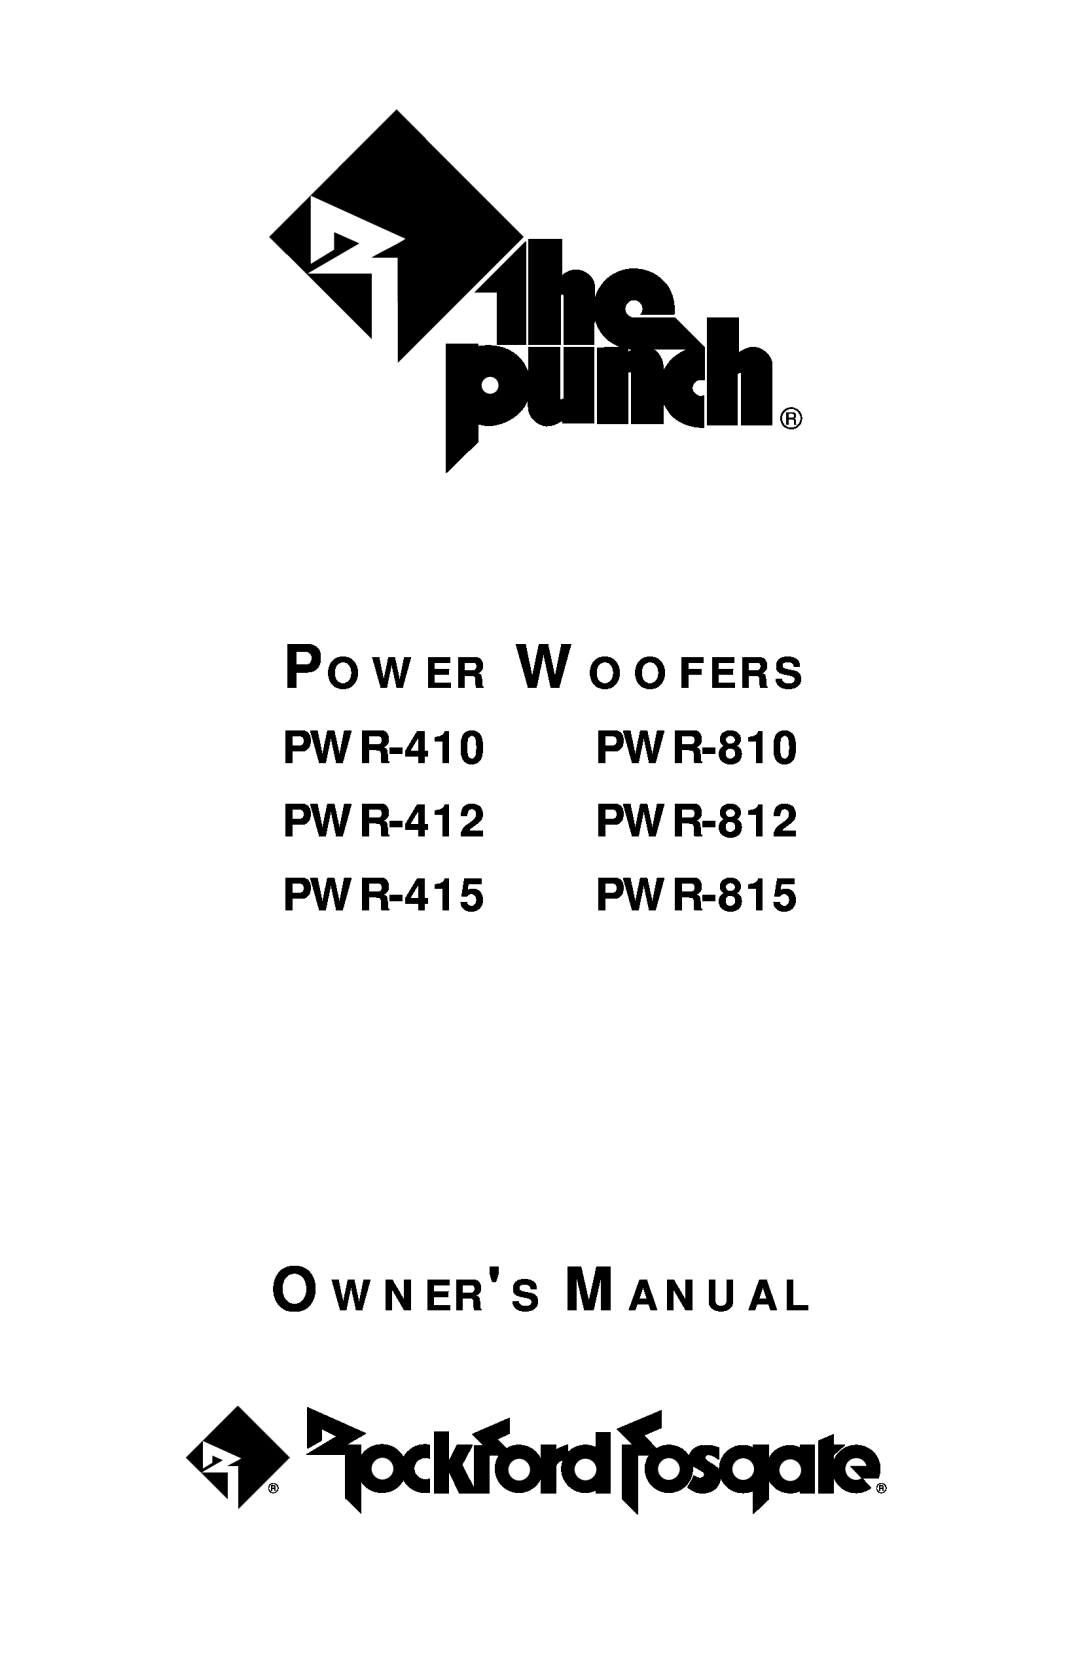 Rockford Fosgate owner manual PWR-410 PWR-810 PWR-412 PWR-812 PWR-415 PWR-815, P O W E R W O O F E R S 